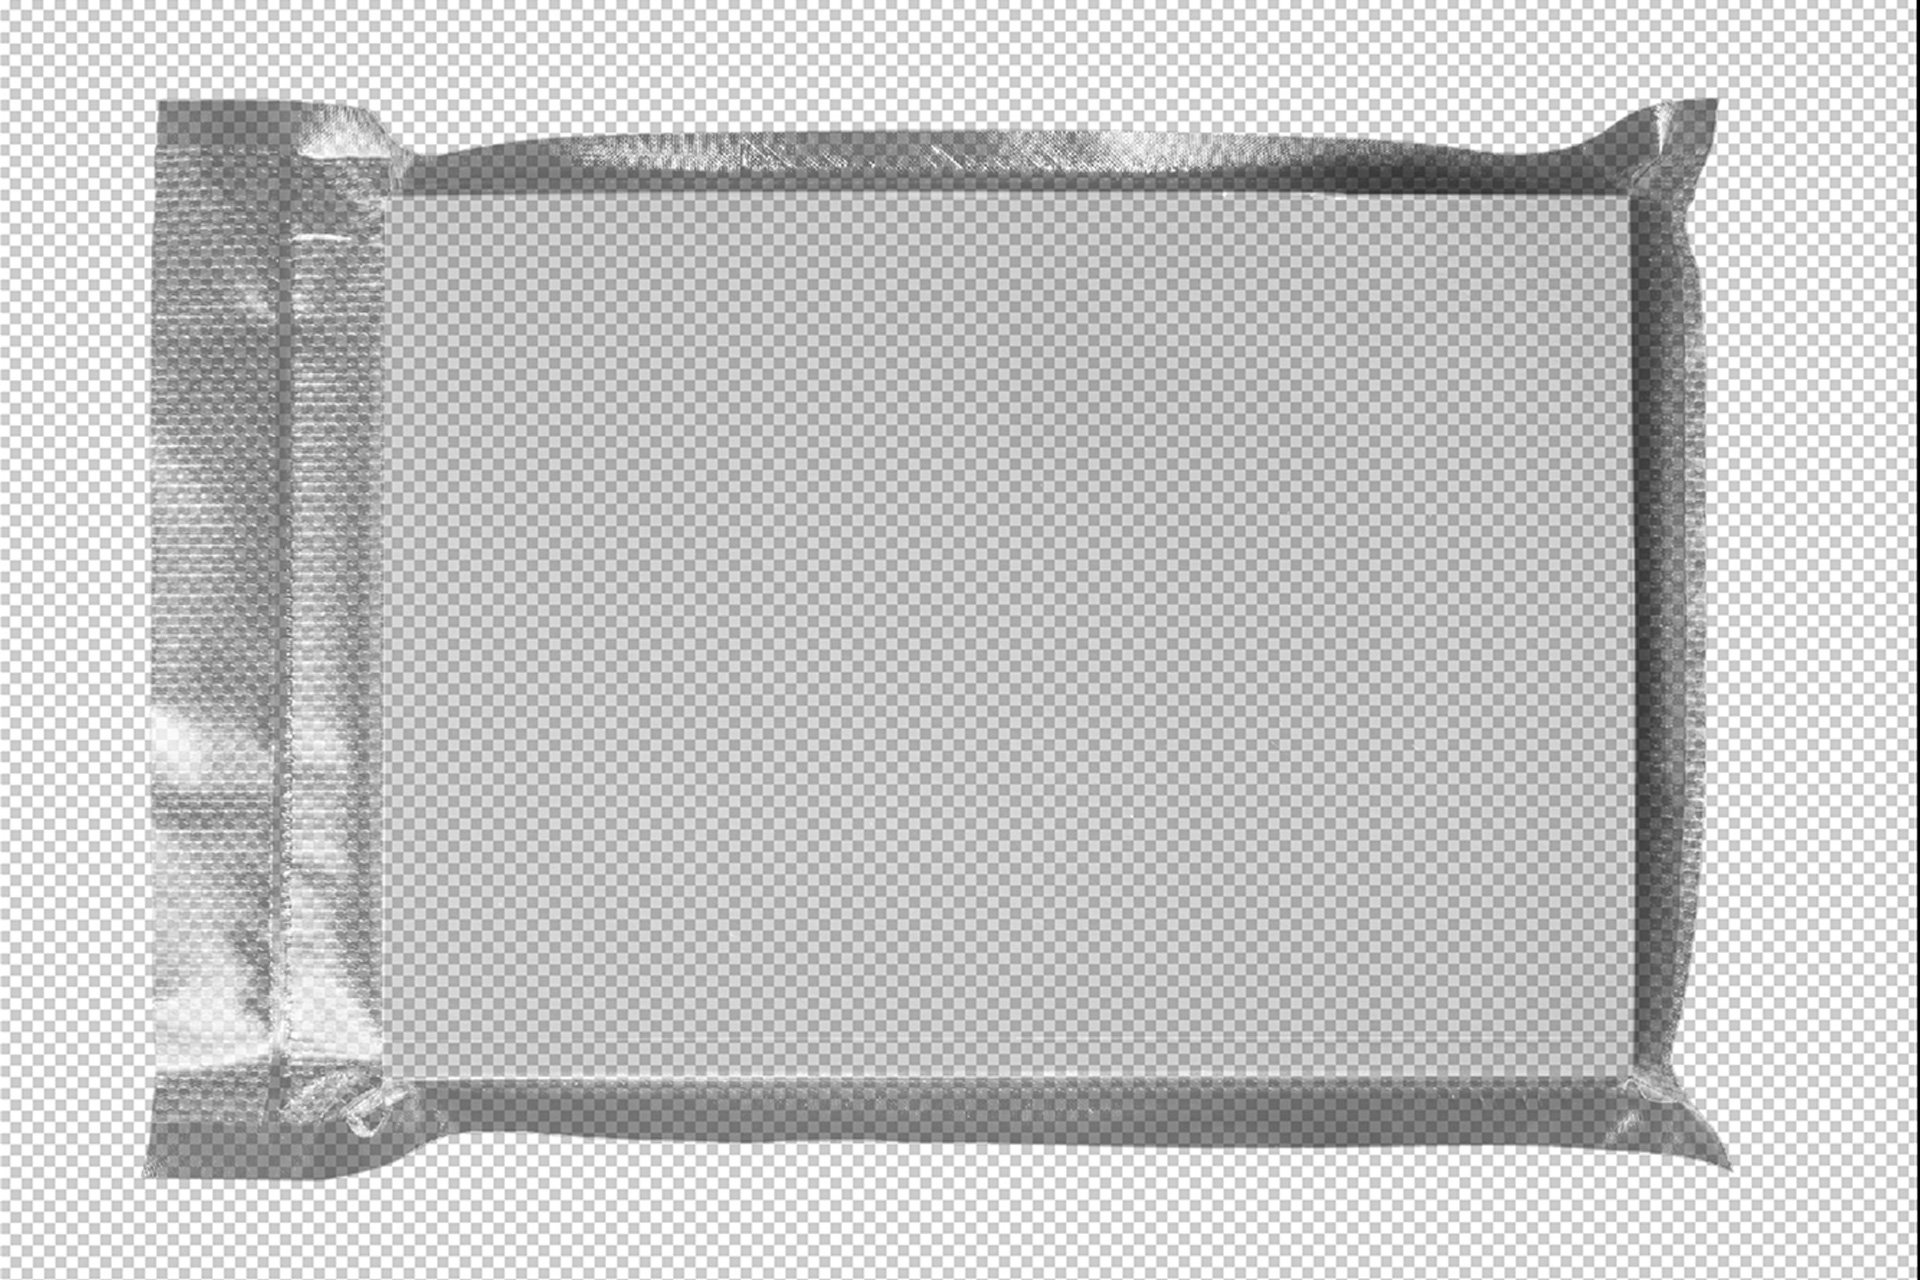 潮流密封塑料产品真空包装袋贴图PS样机素材 BLKMARKET-Sealed Bundle设计素材模板